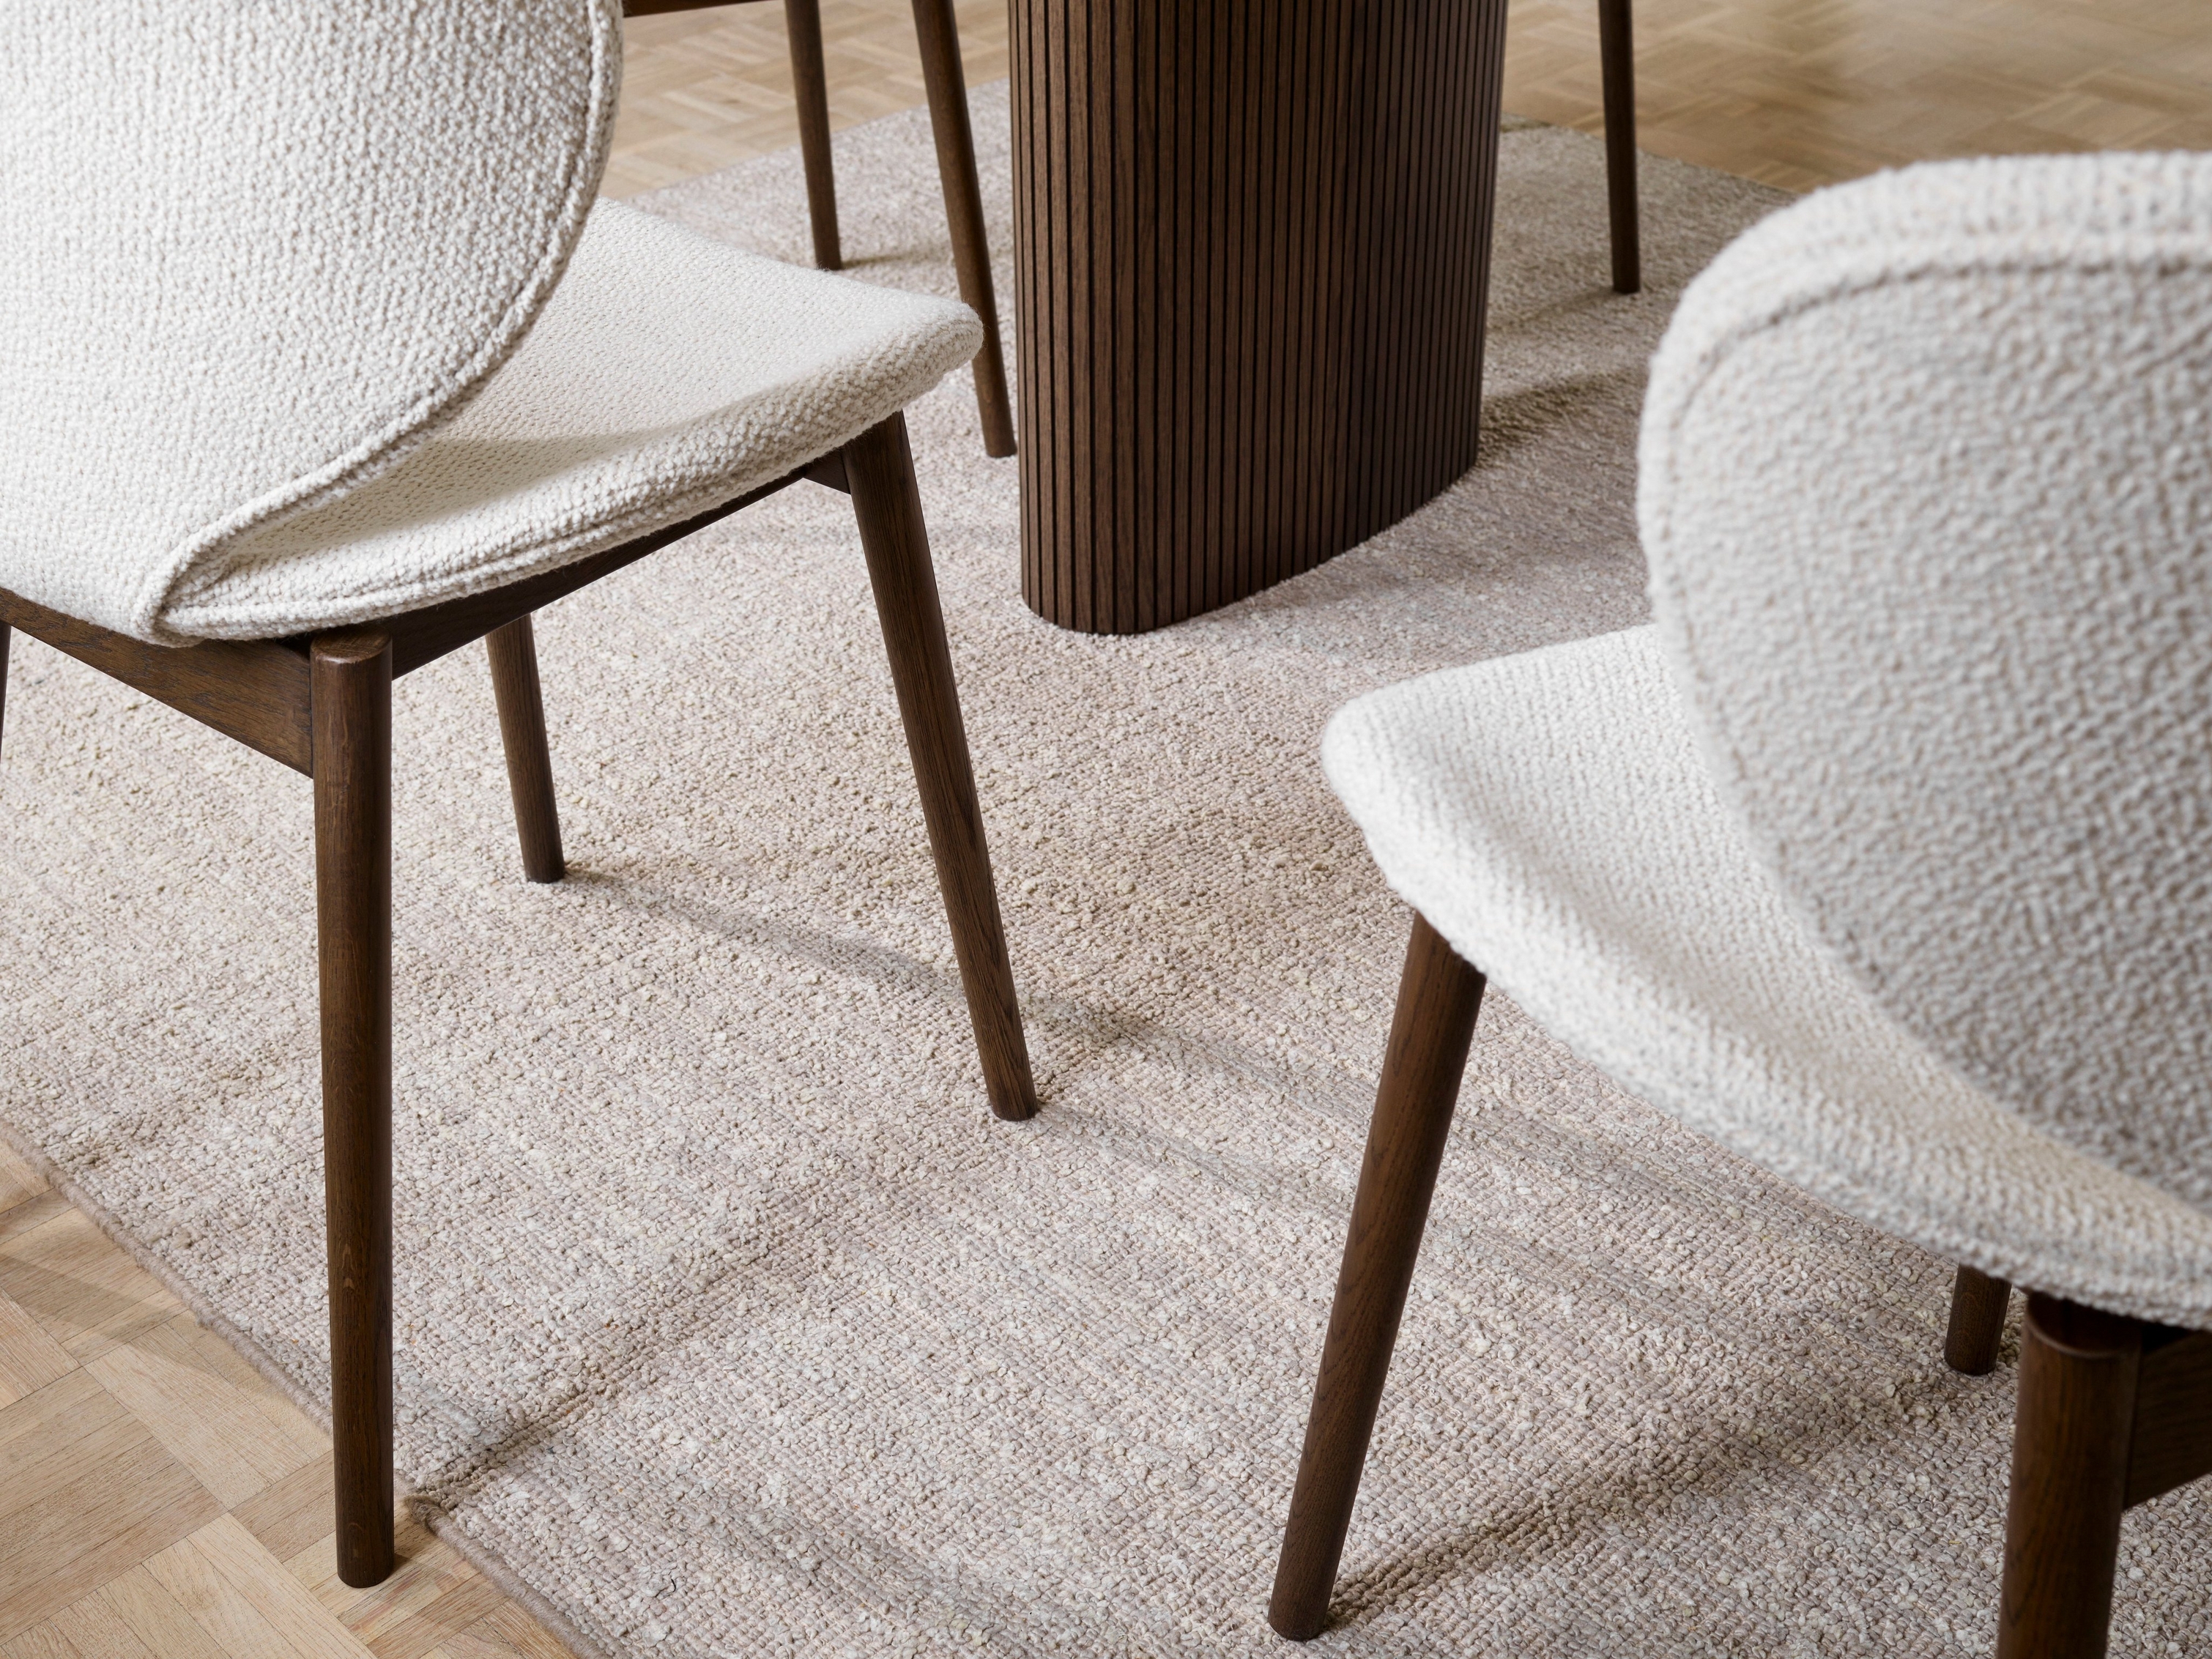 Hamilton stoelen met structuur en karpet met een houten tafel, gericht op vloerdetails.